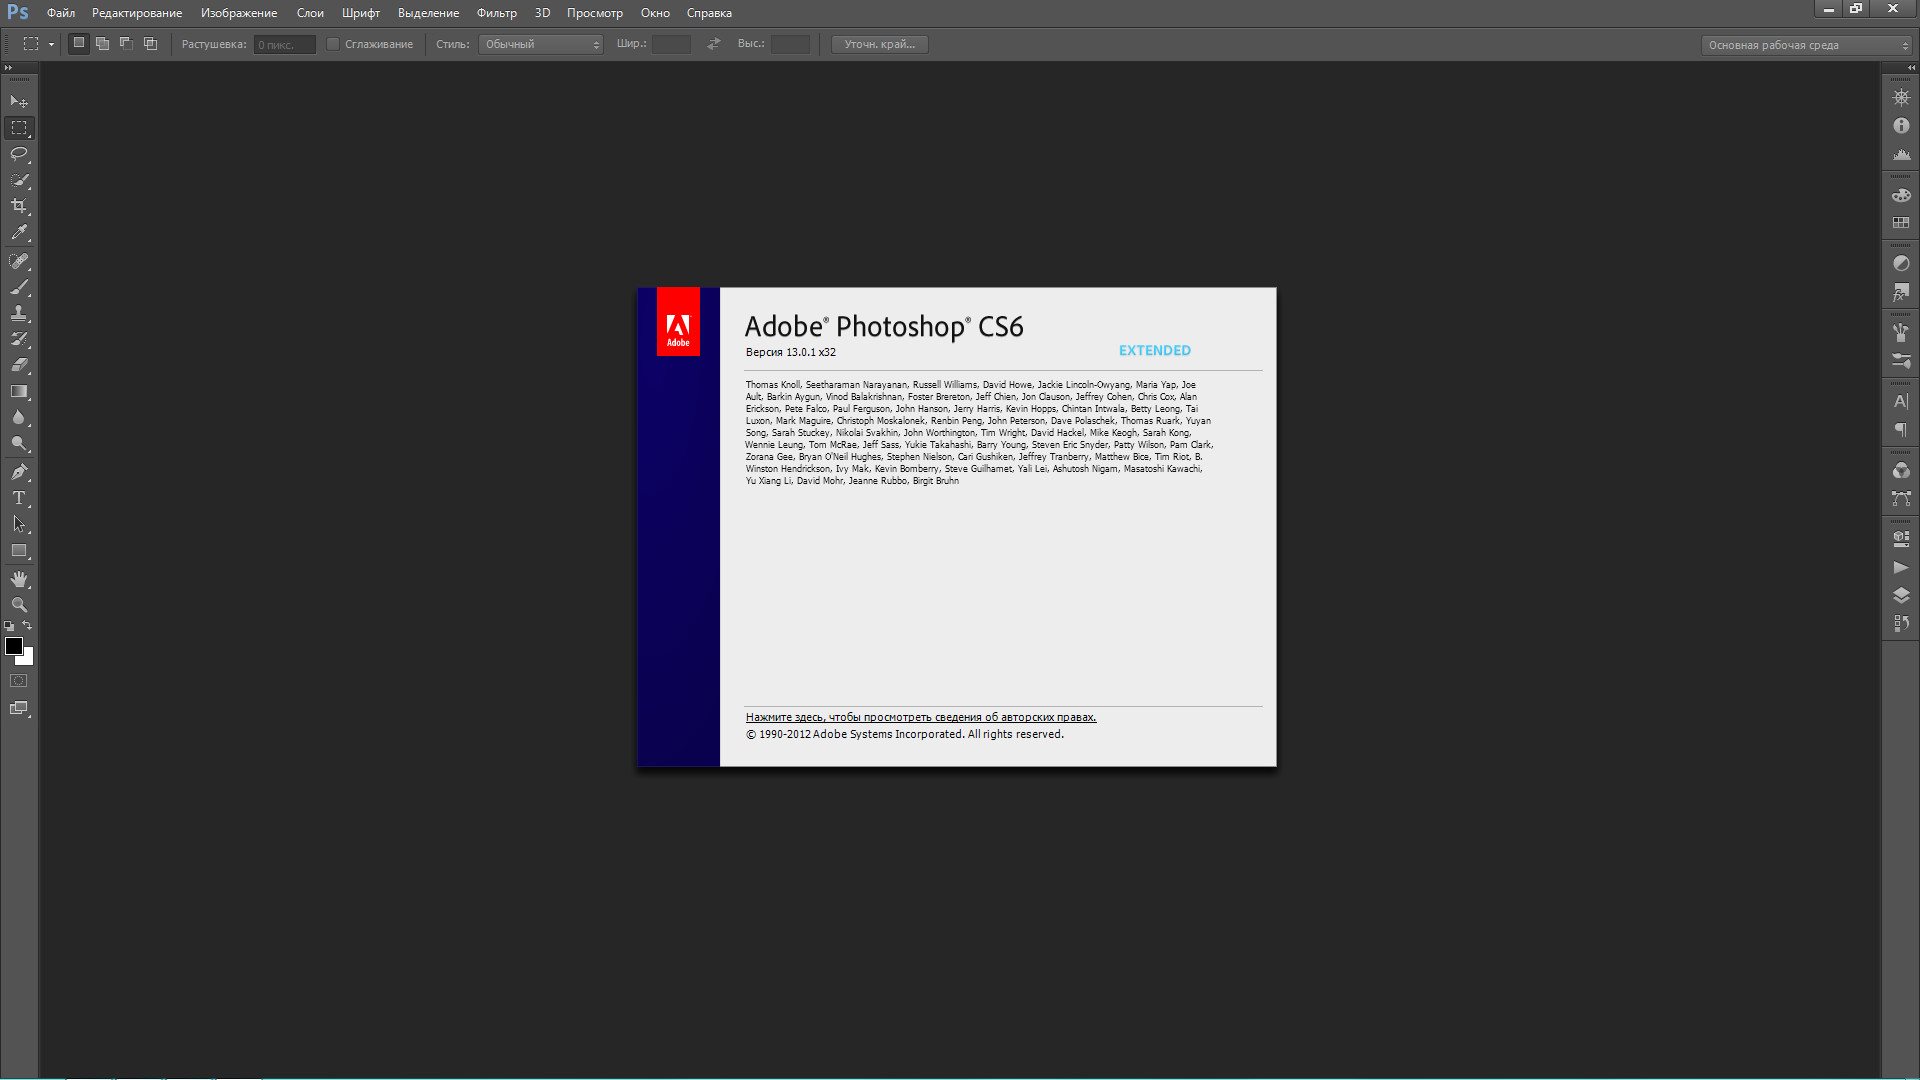 Adobe Photoshop CS6.v13.0